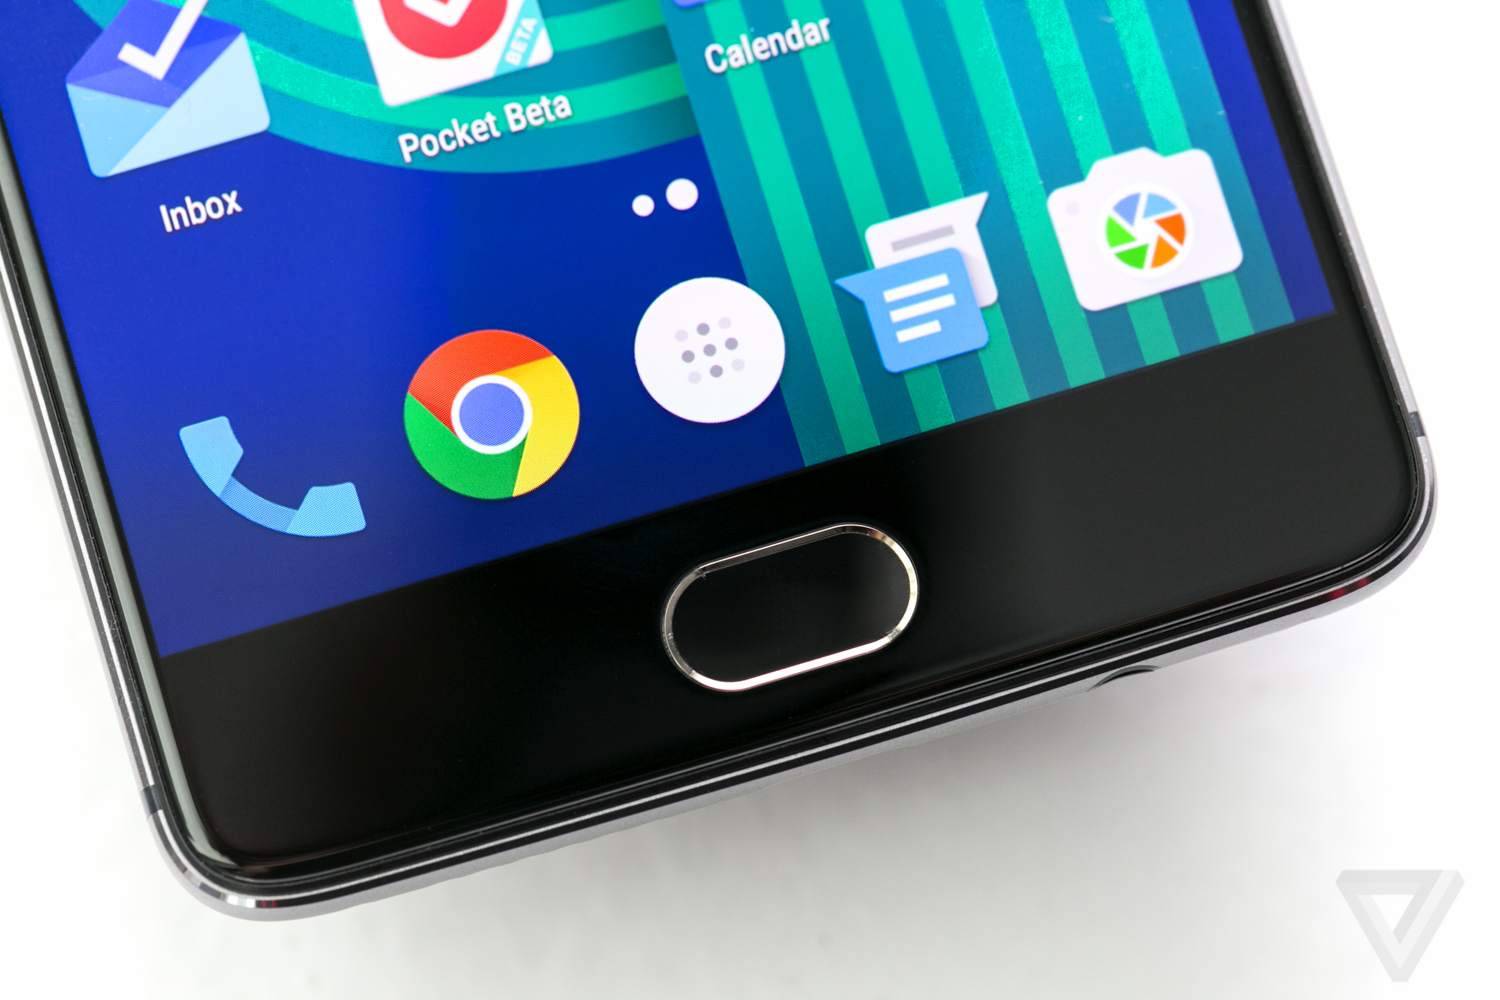 OnePlus 3, smartphone, terbaru, 2016, android, HP, spesifikasi dan harga oneplus 3